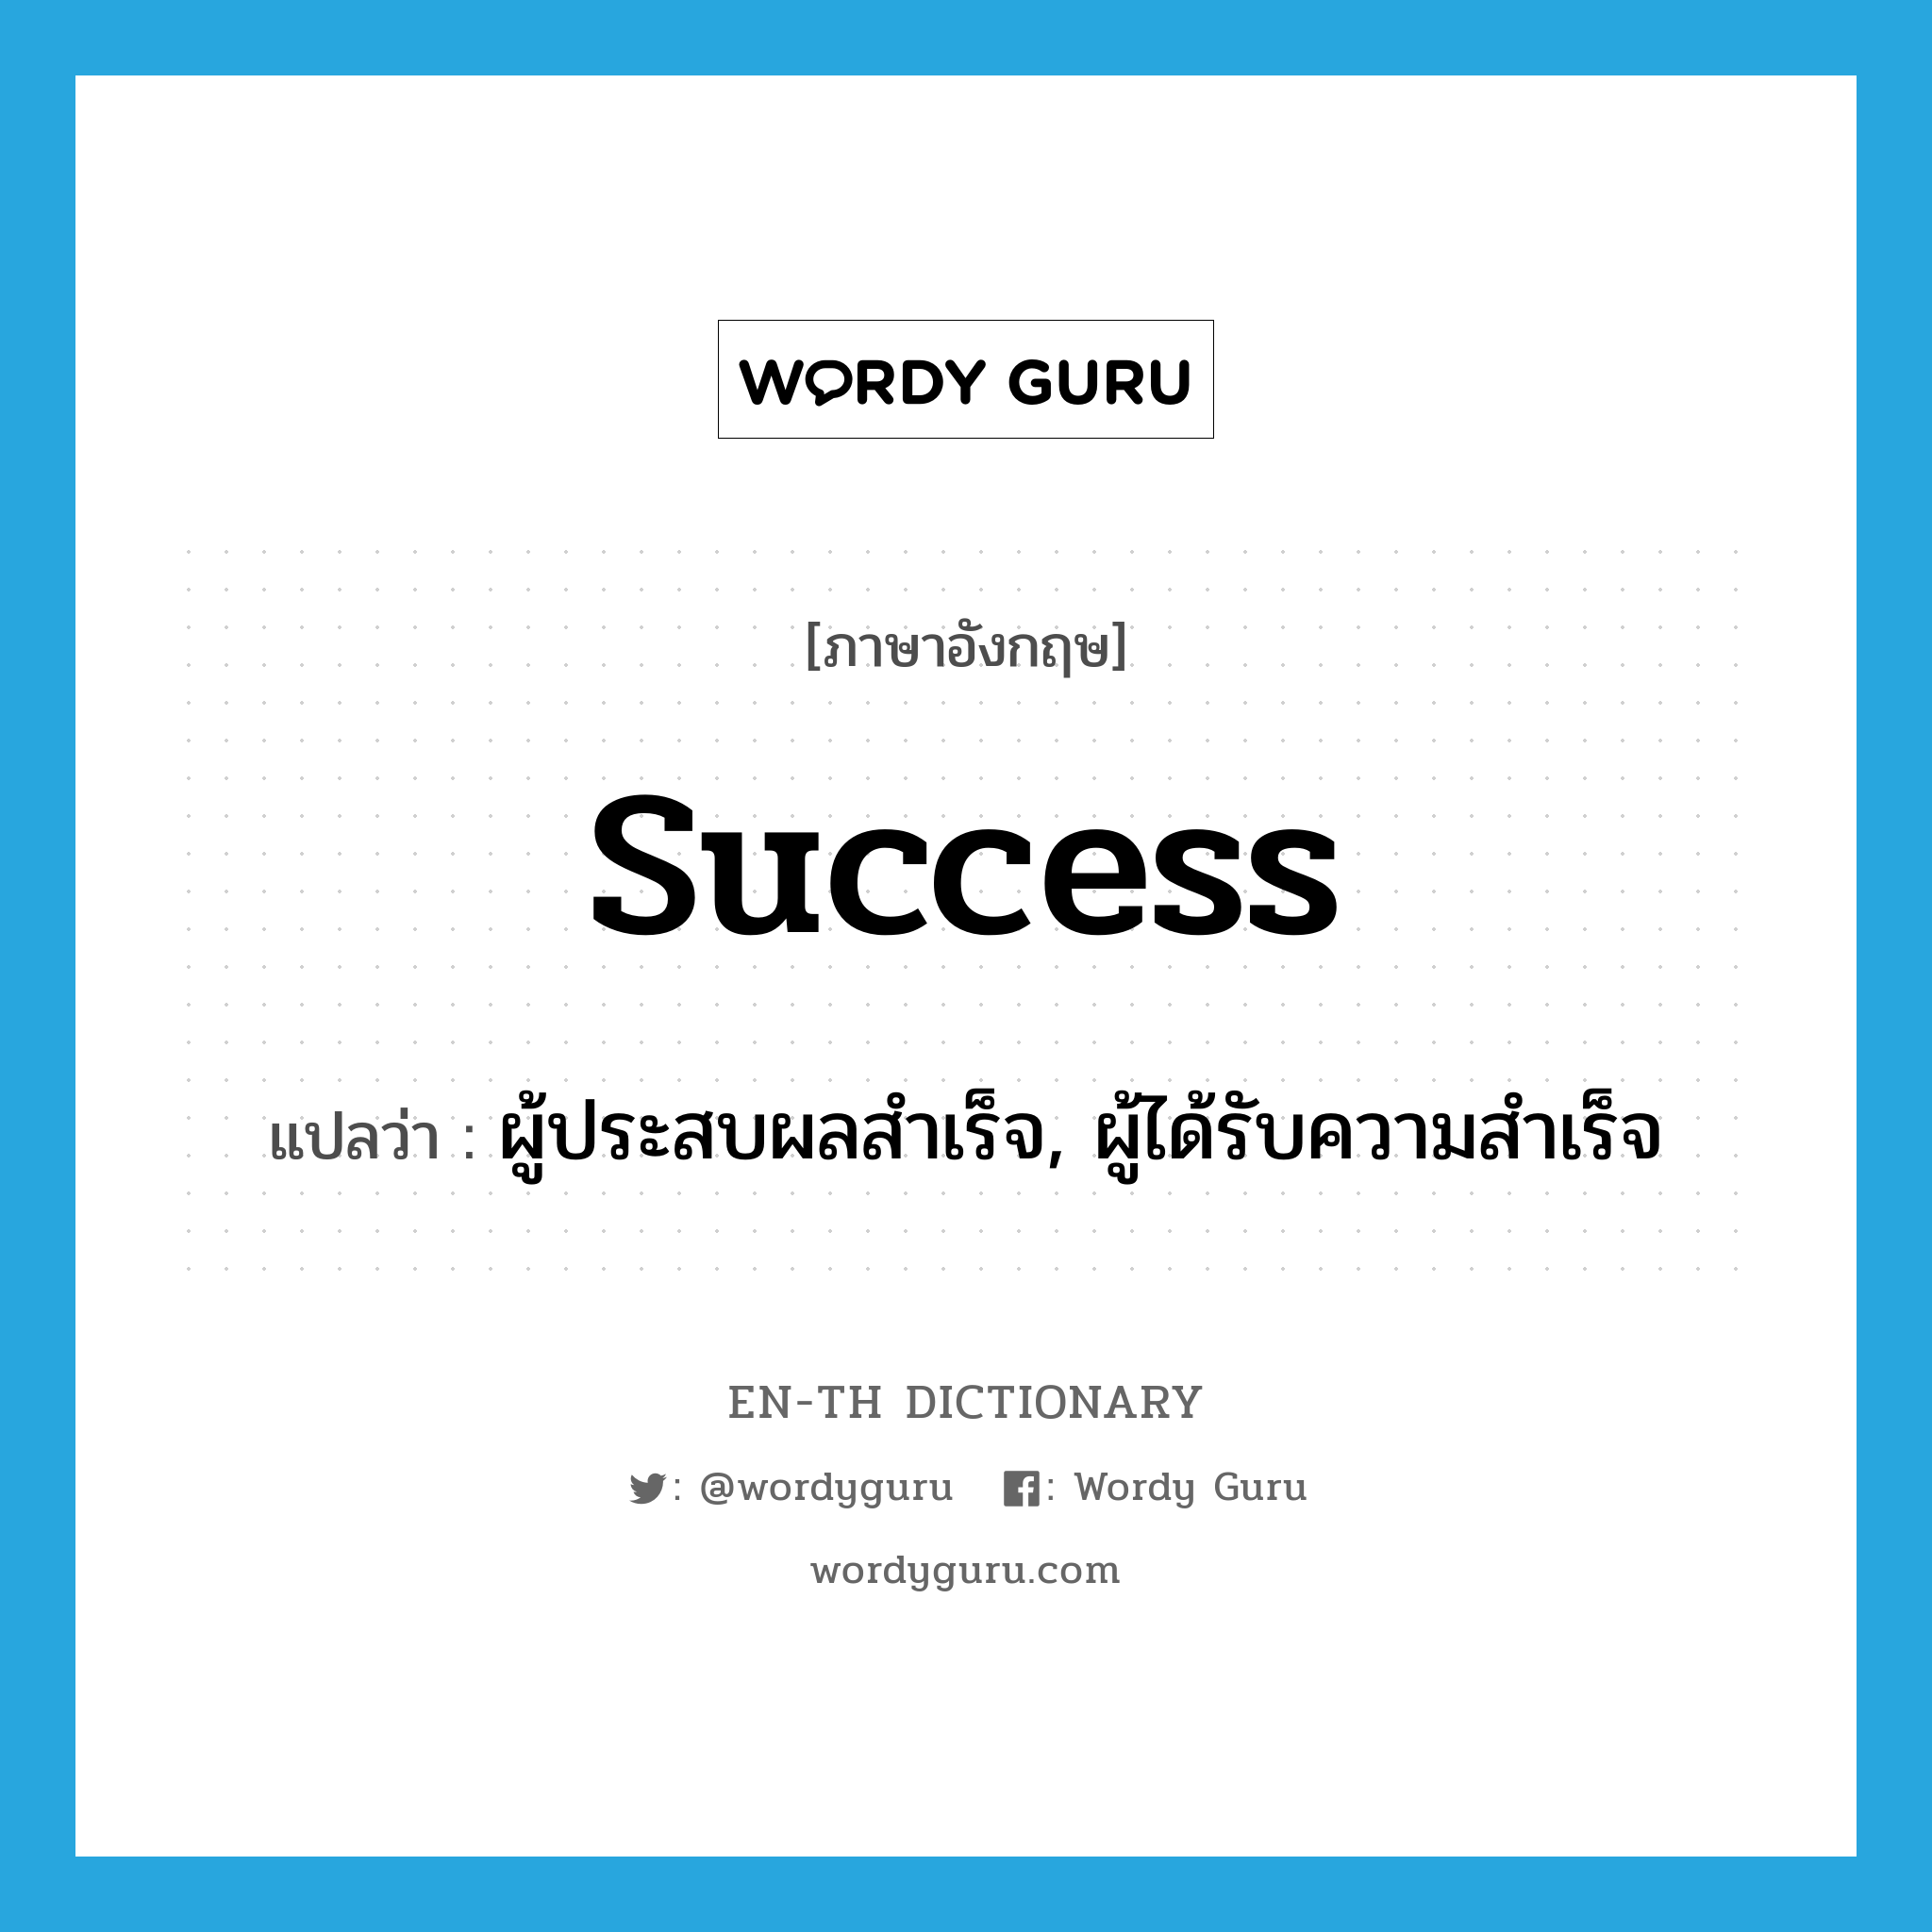 ผู้ประสบผลสำเร็จ, ผู้ได้รับความสำเร็จ ภาษาอังกฤษ?, คำศัพท์ภาษาอังกฤษ ผู้ประสบผลสำเร็จ, ผู้ได้รับความสำเร็จ แปลว่า success ประเภท N หมวด N